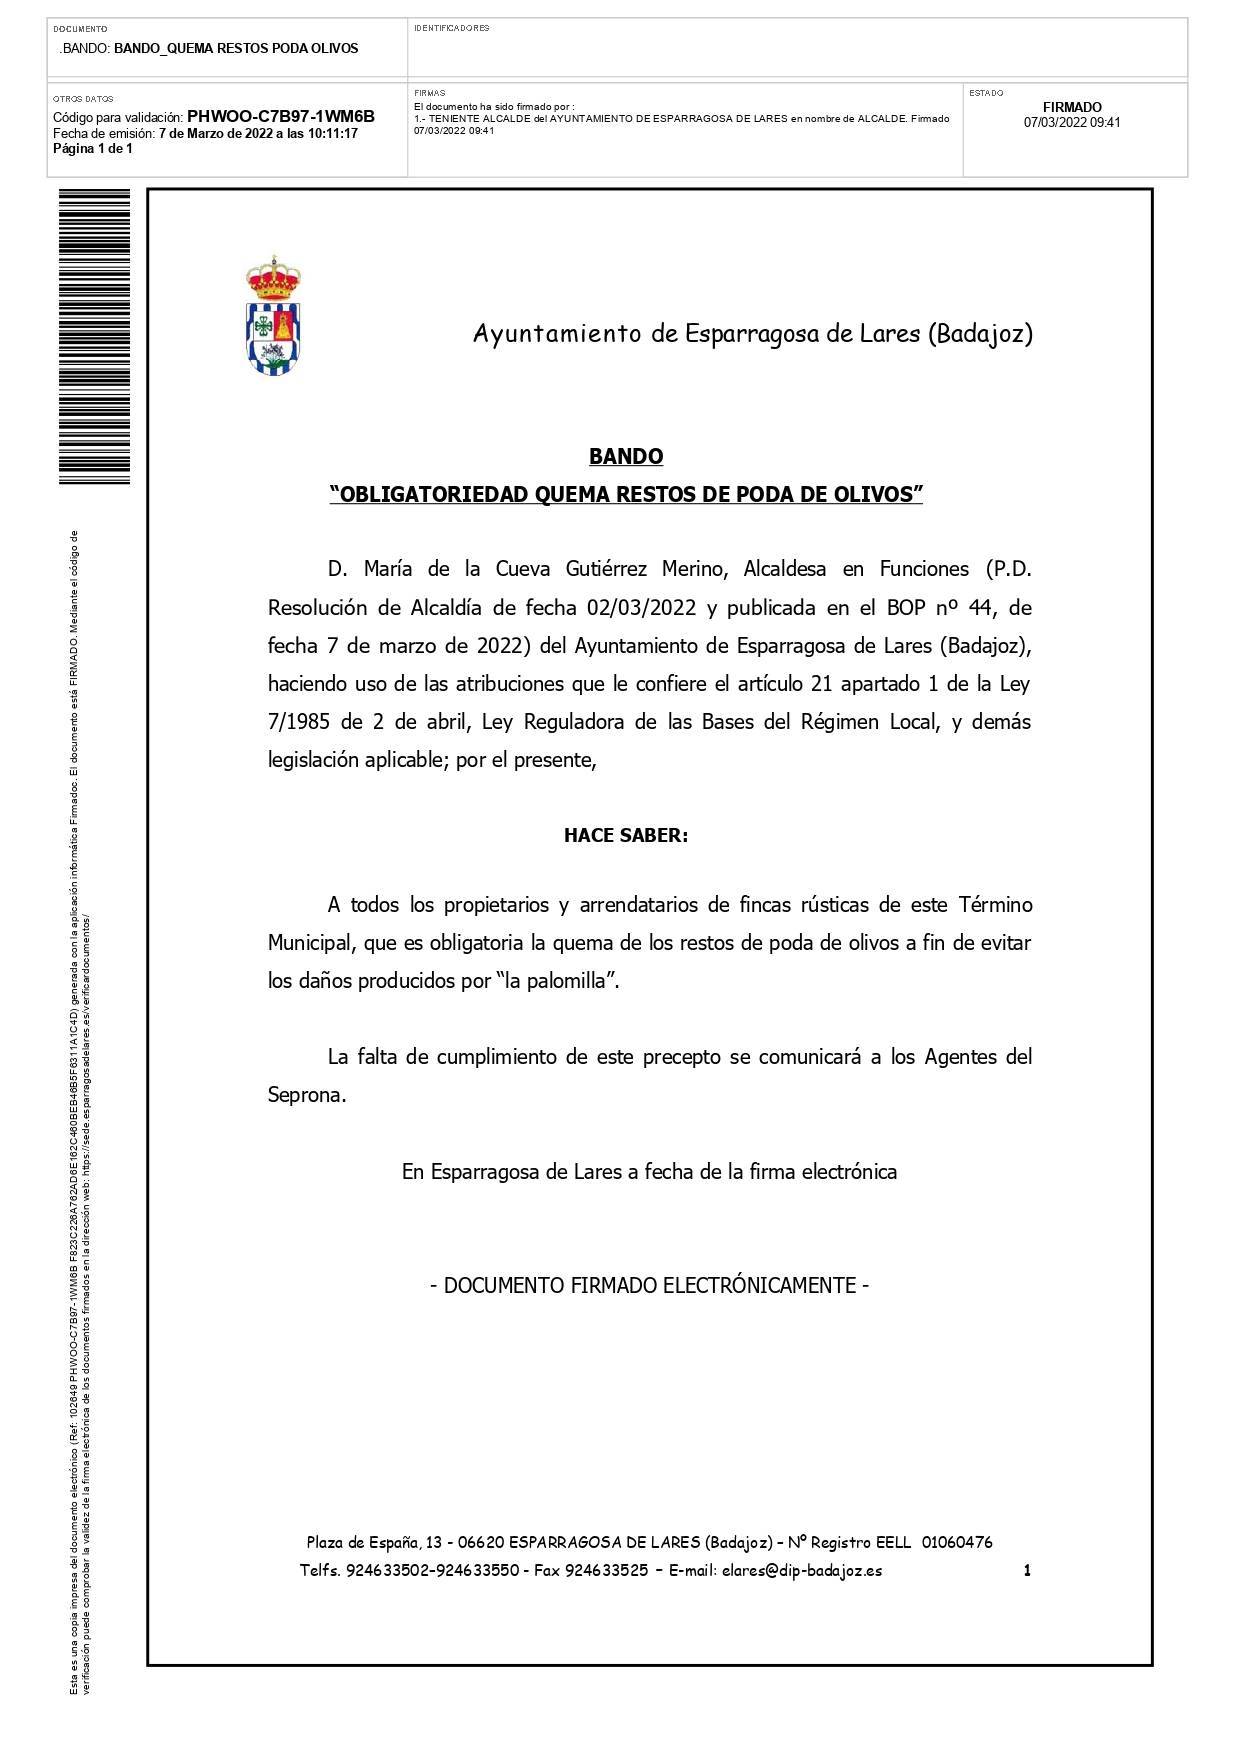 Obligatoriedad de quema de restos de poda de olivos (2022) - Esparragosa de Lares (Badajoz)